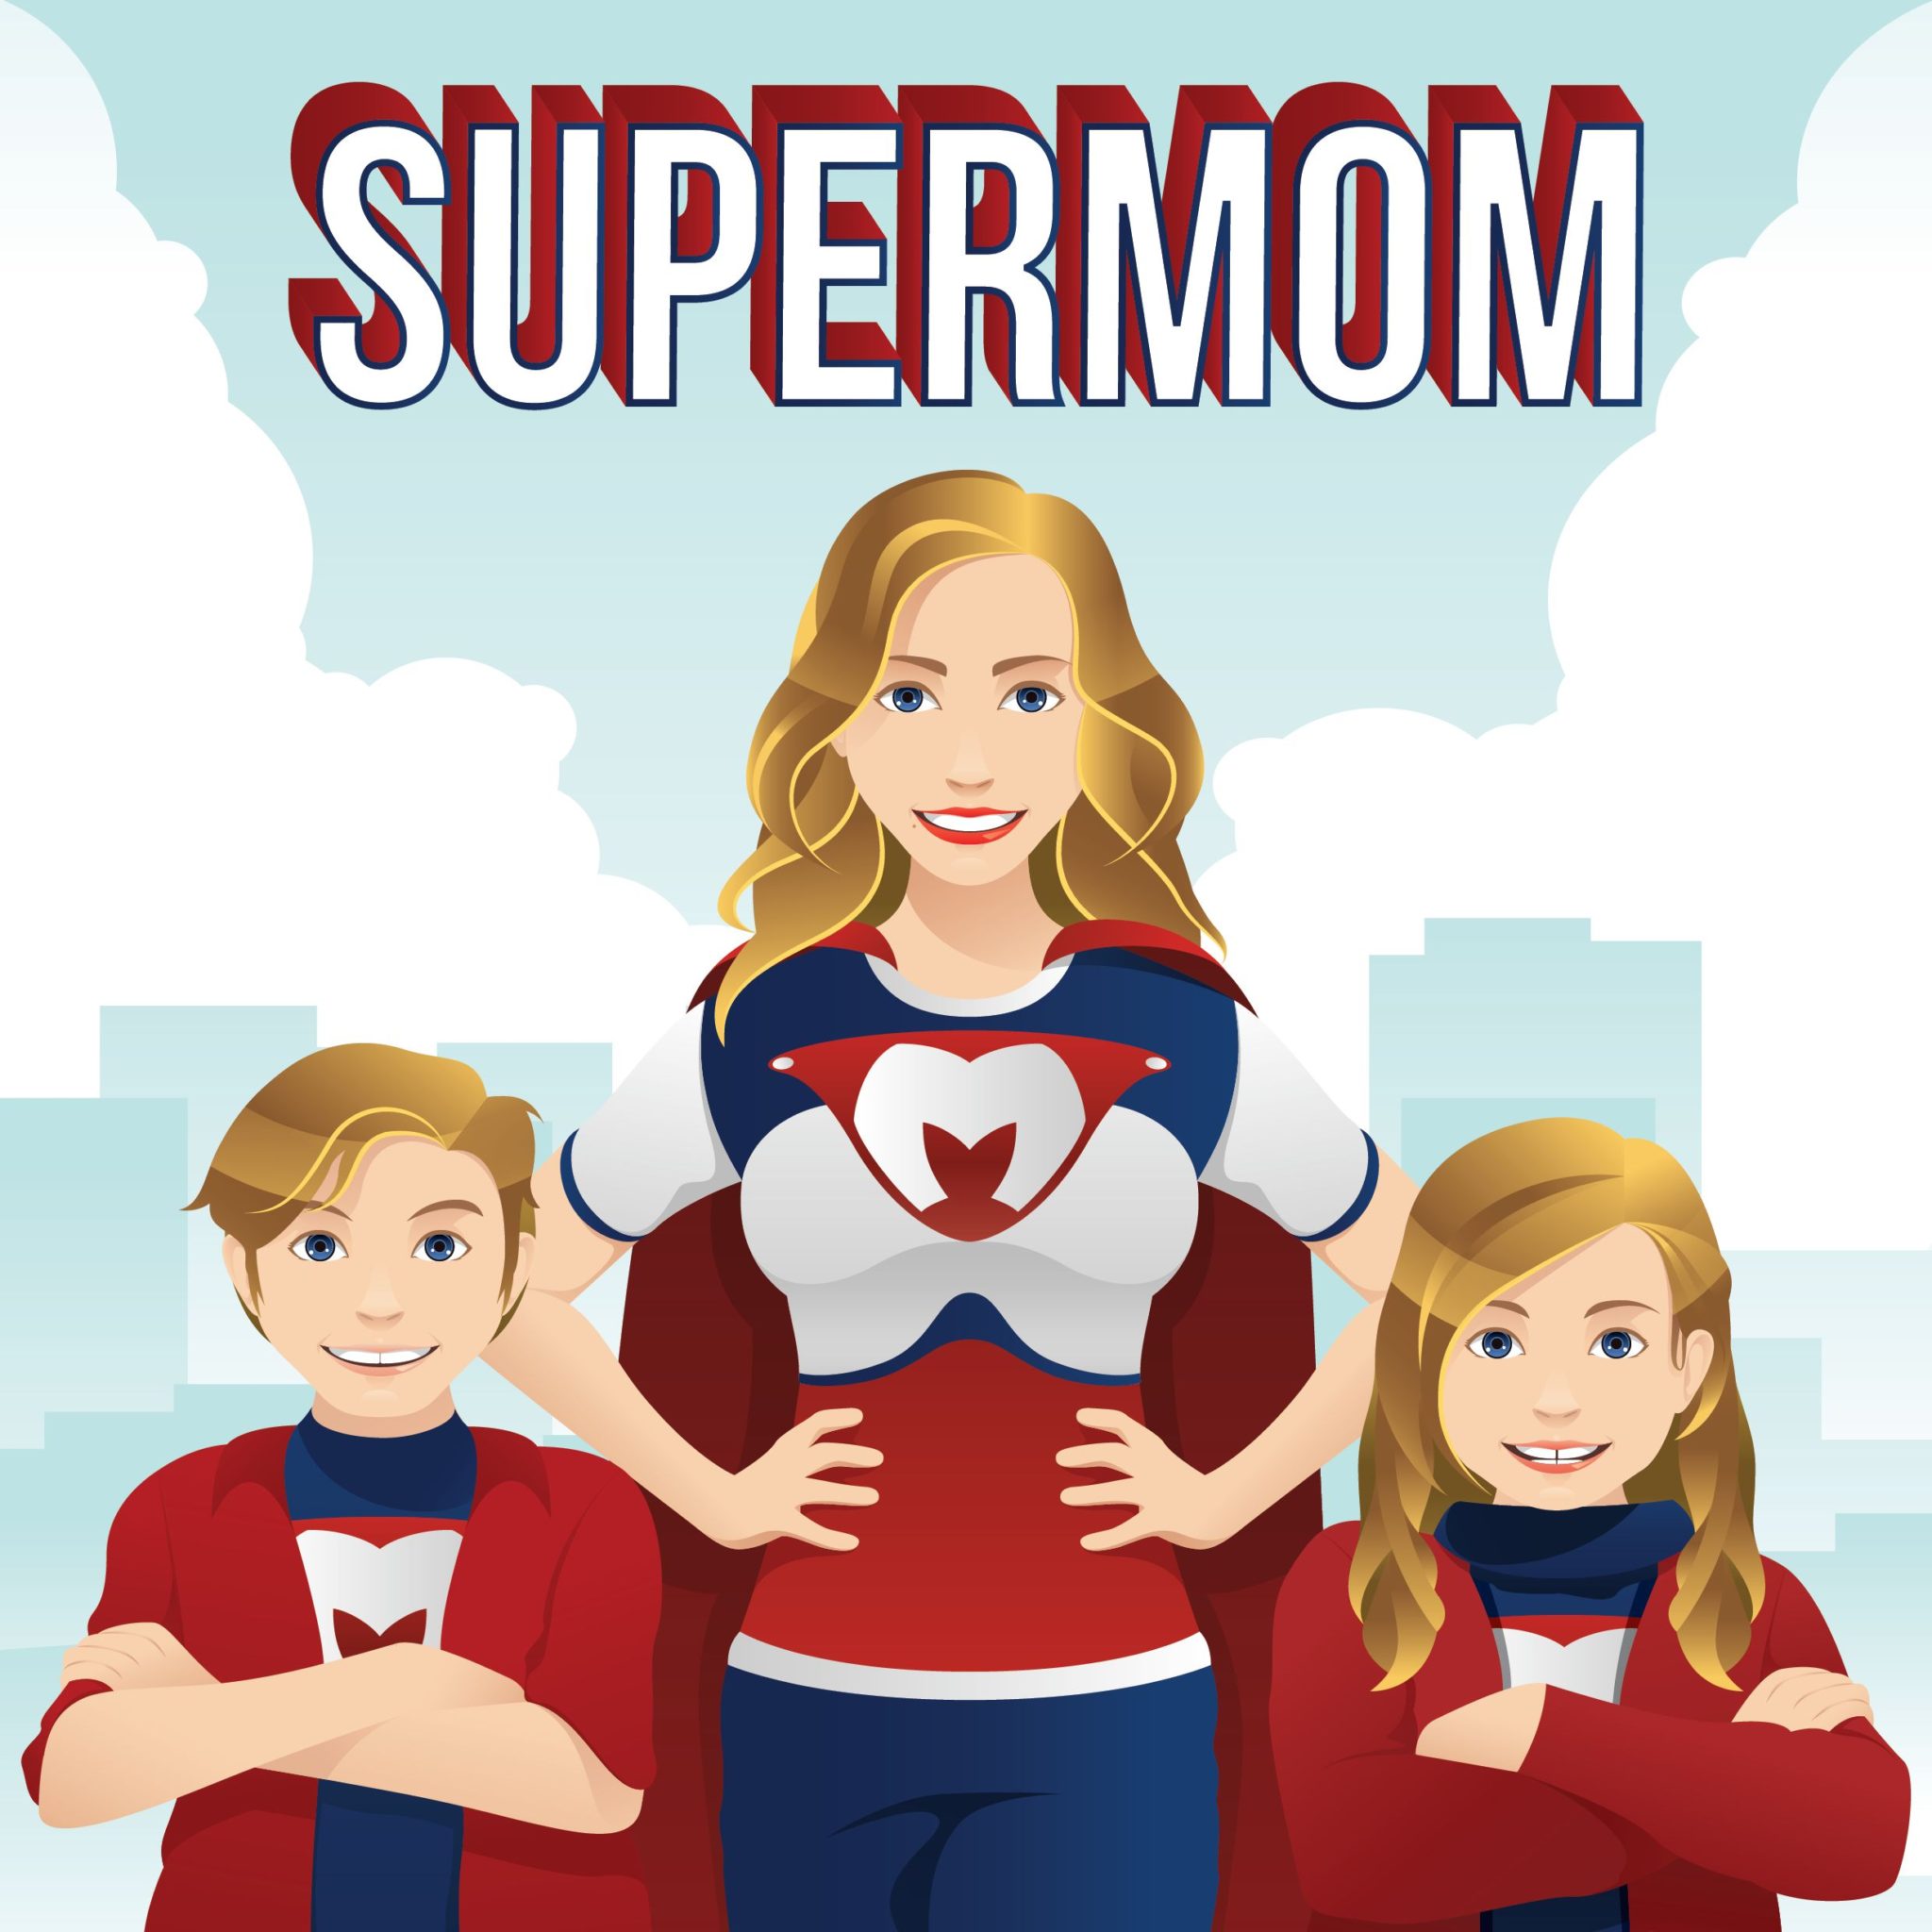 Single Mom? Or SuperMom?